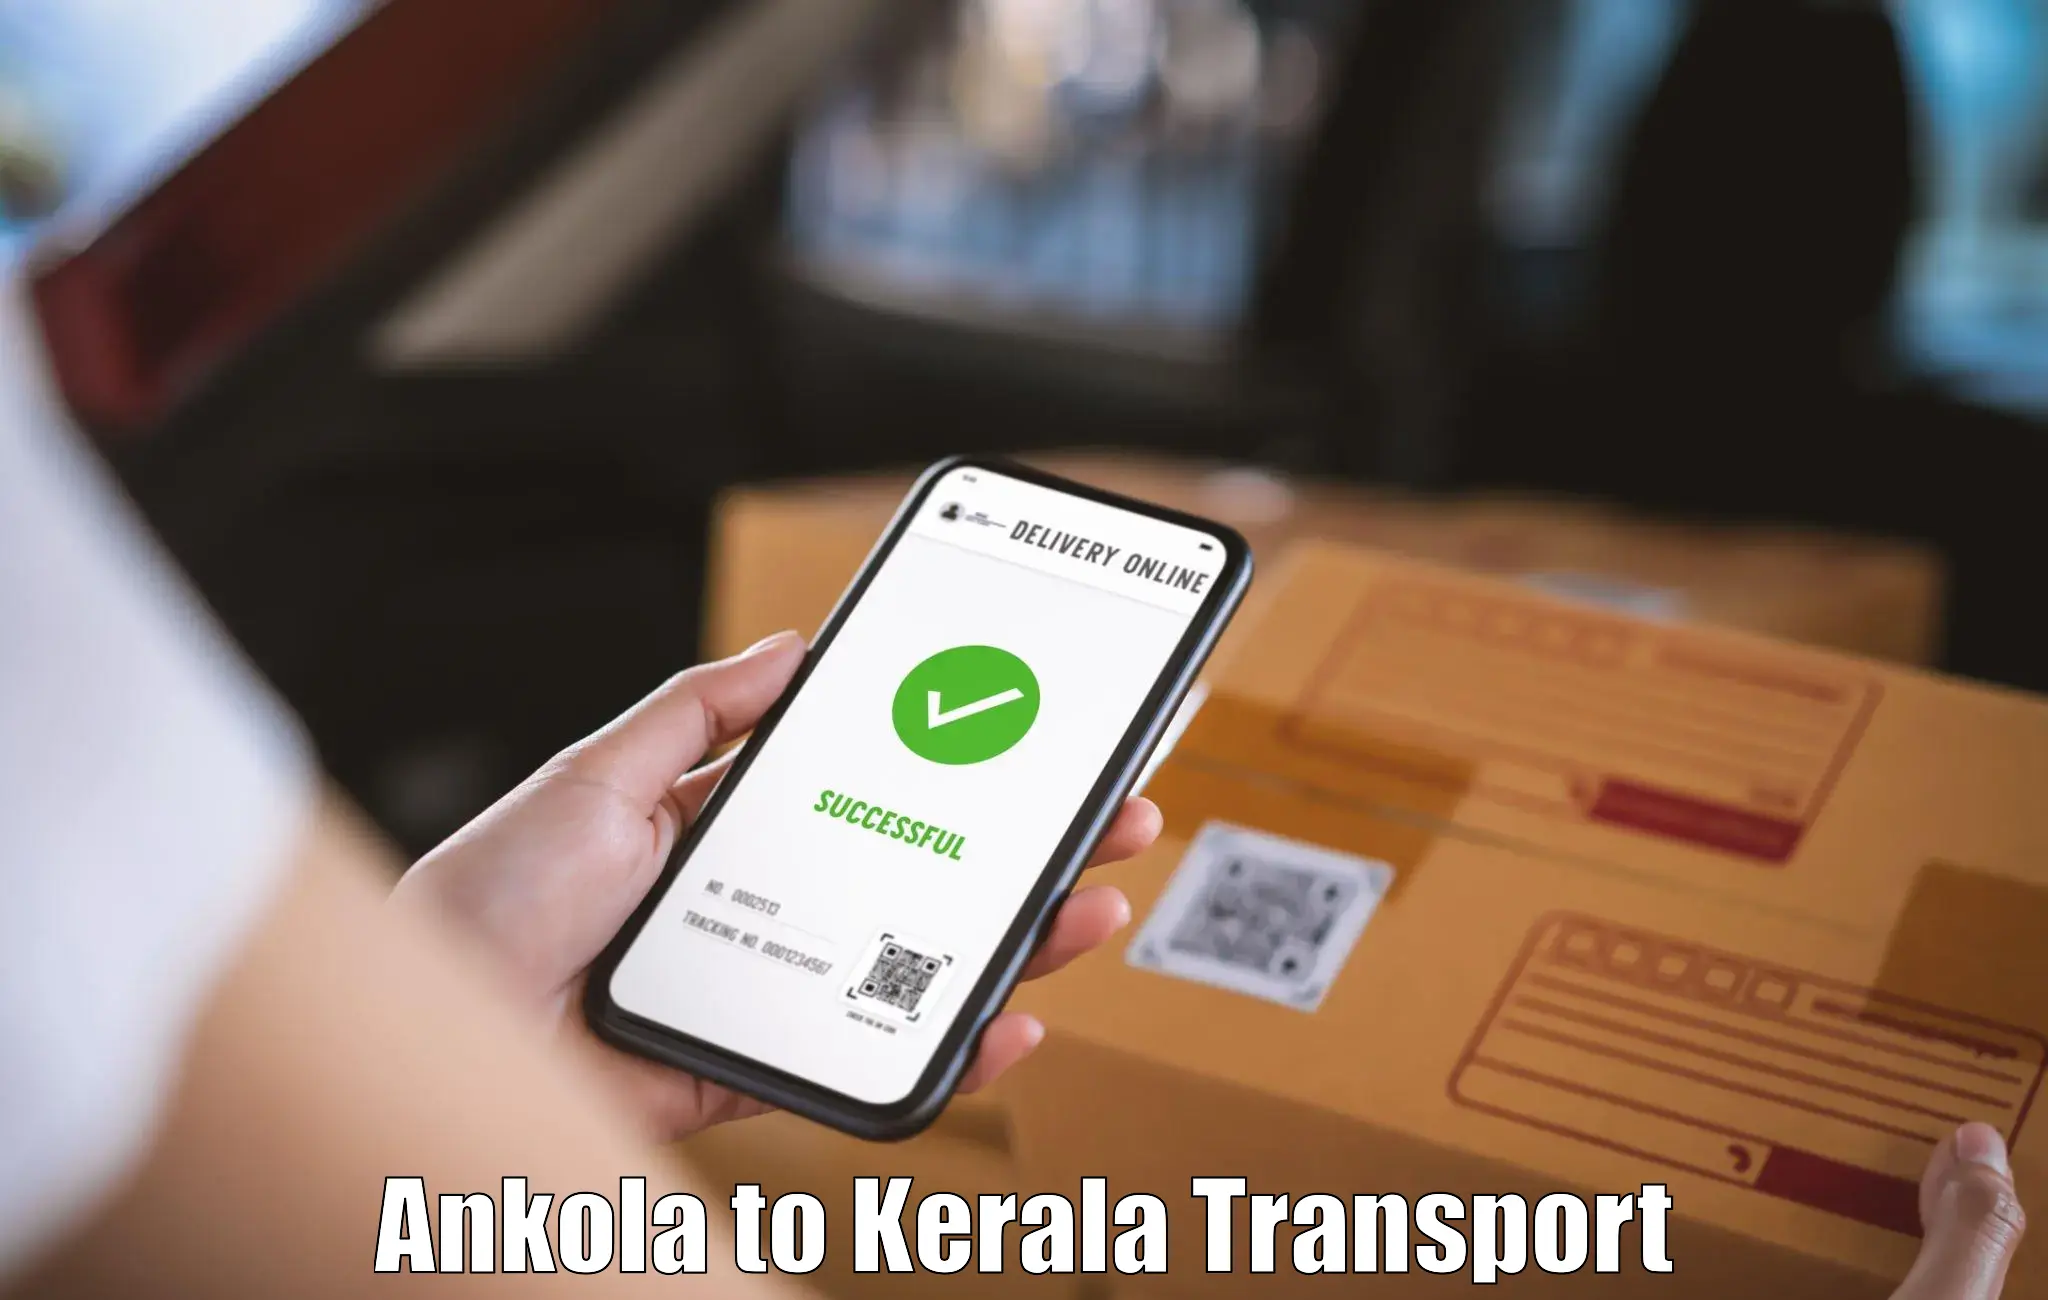 Intercity transport Ankola to Kerala